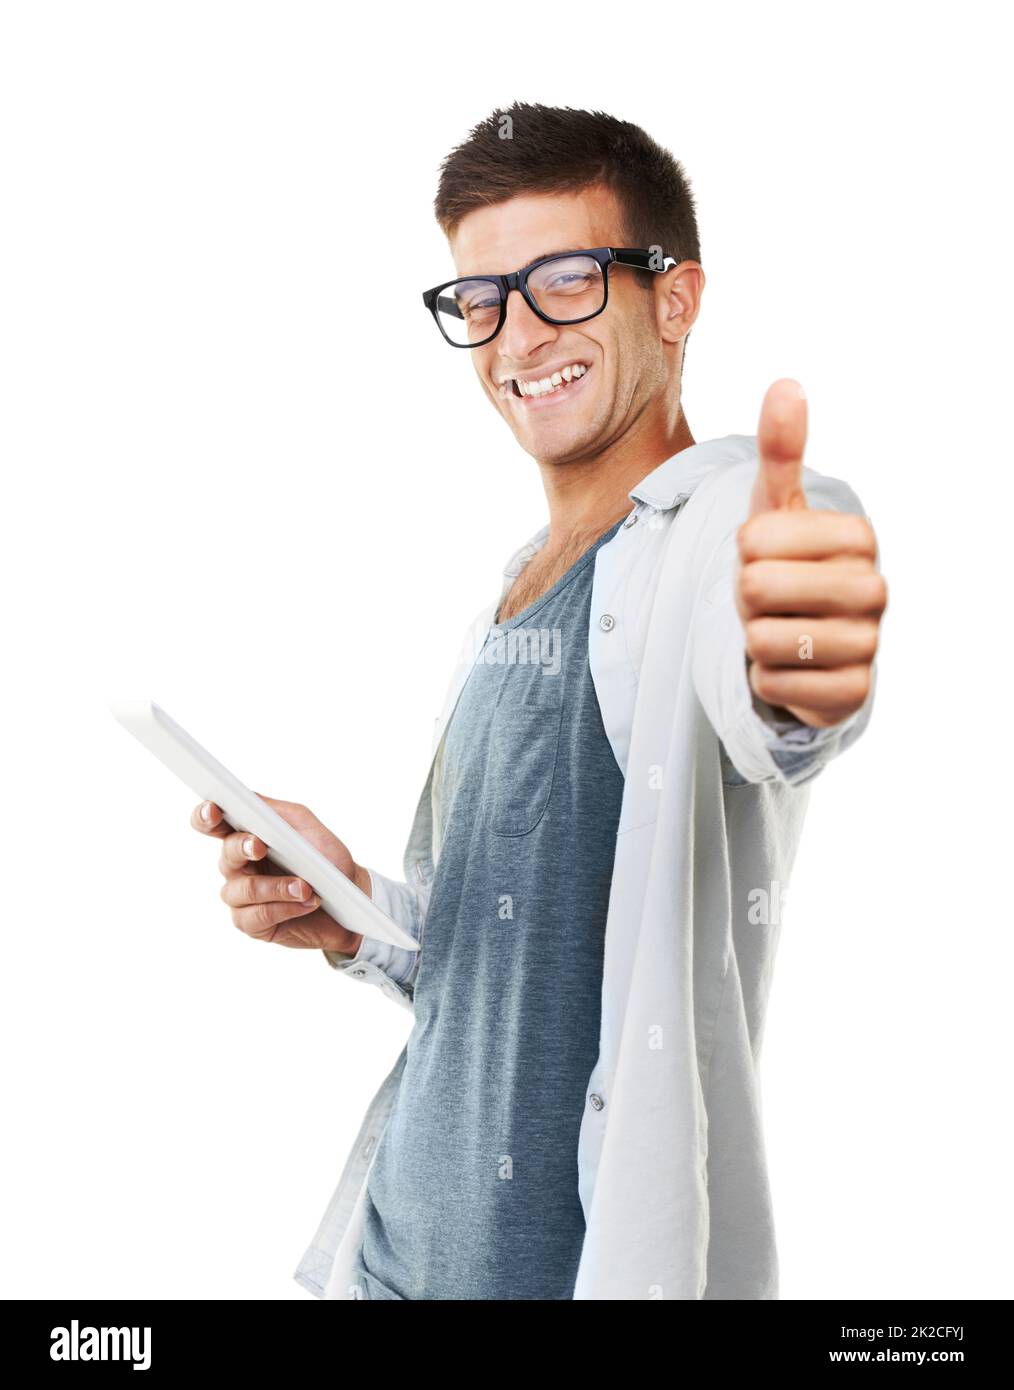 Pollici su. Ritratto di un uomo sorridente con gli occhiali con i pollici in su e tenendo un touch screen. Foto Stock